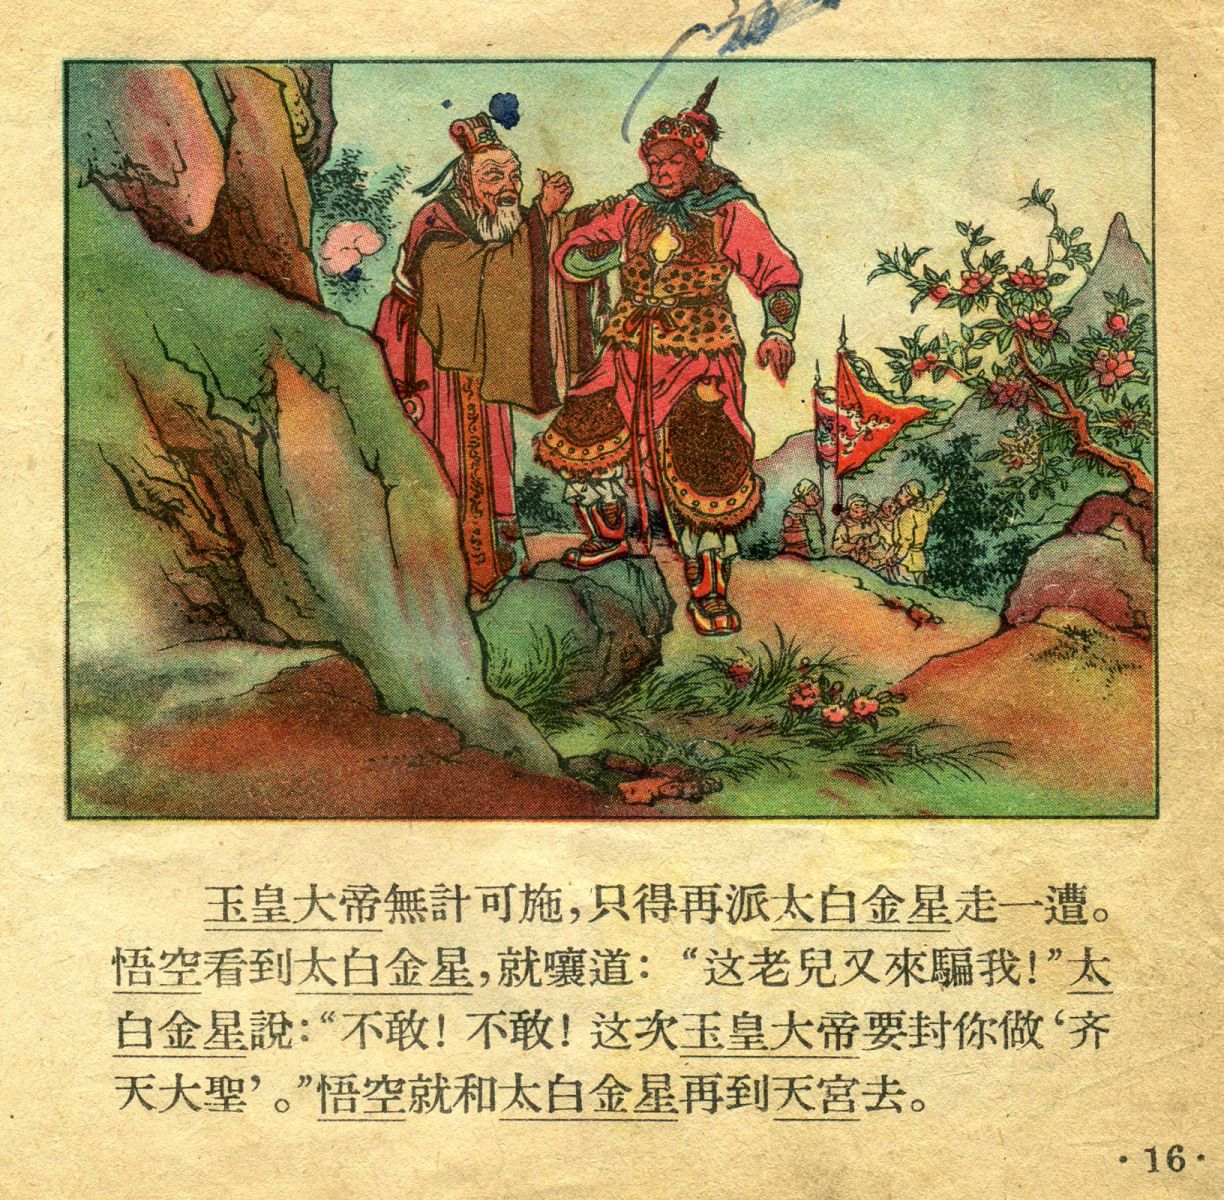 1956年彩色连环画《孙悟空大闹天宫》董天野 绘